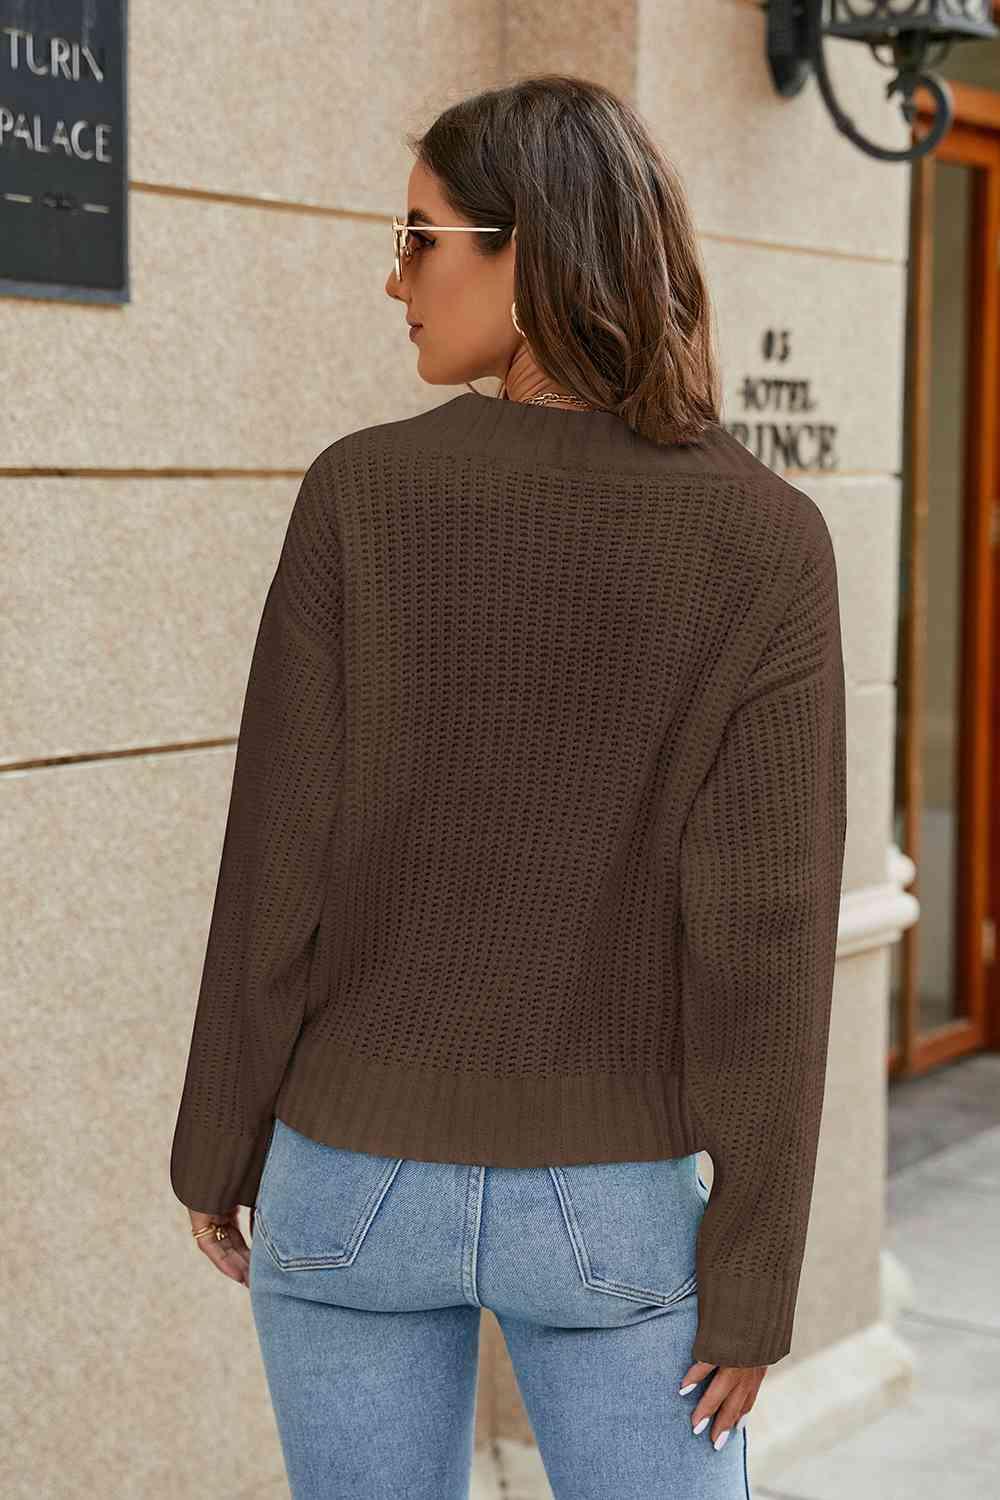 Openwork Surplice Long Sleeve Sweater - Bona Fide Fashion